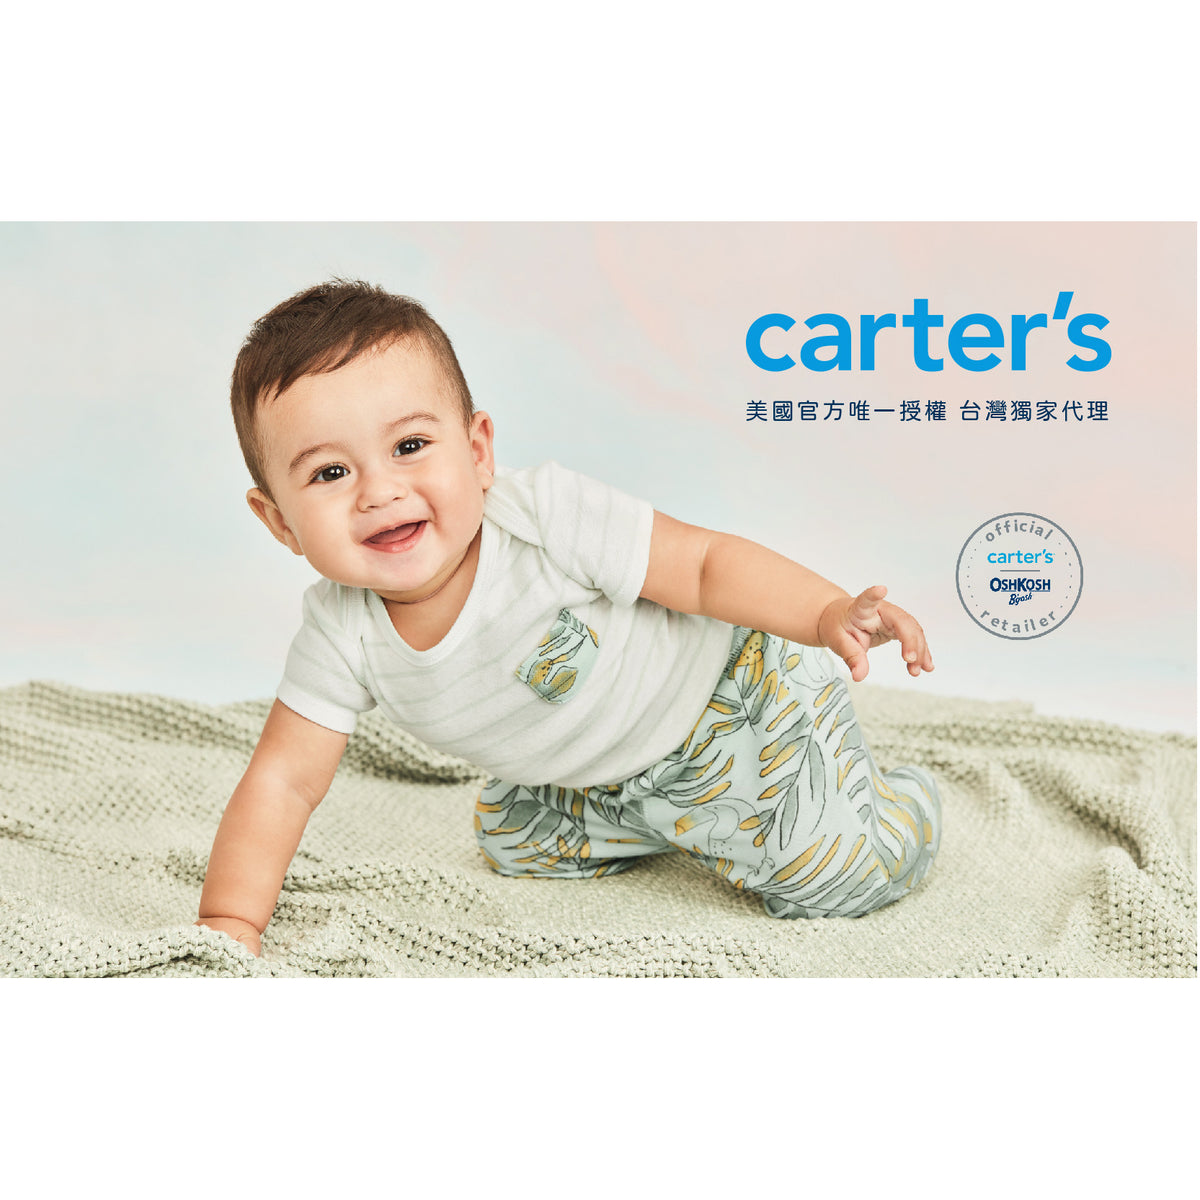 Carter's 變色龍探險短褲(6M-24M)